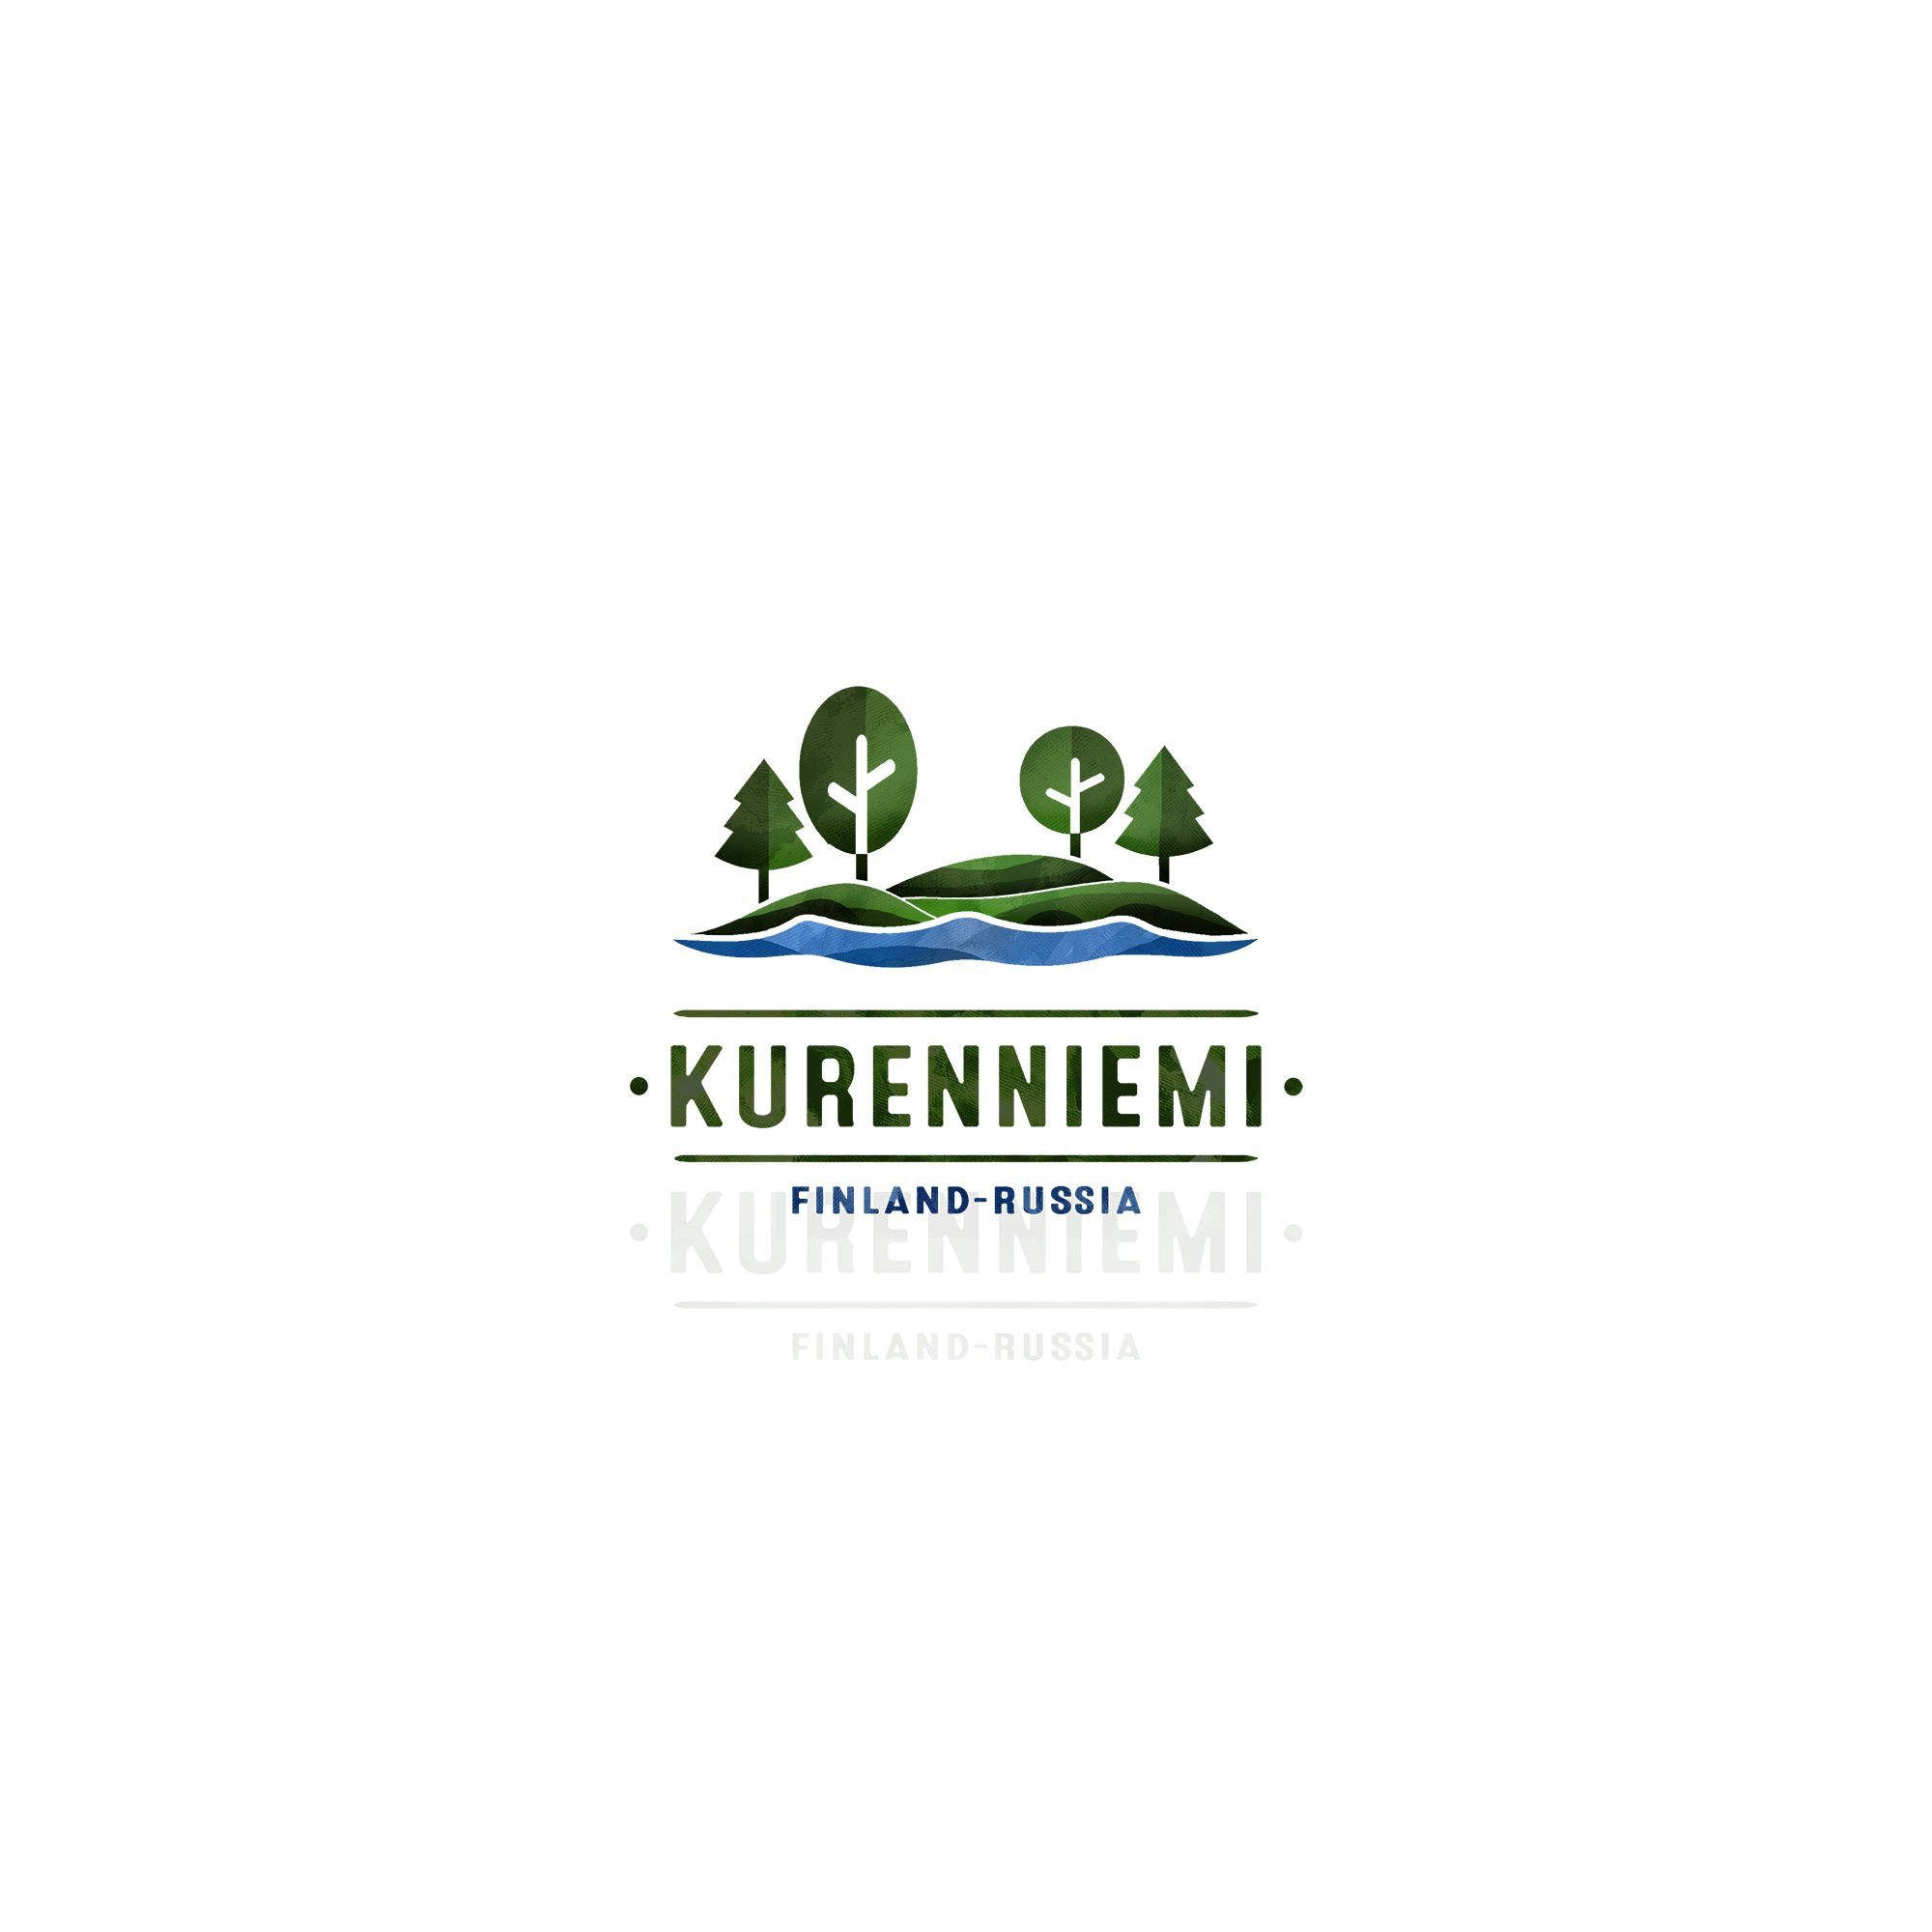 Логотип для Kurenniemi, FinAgRu-nat, Finland-Russia - дизайнер talitattooer